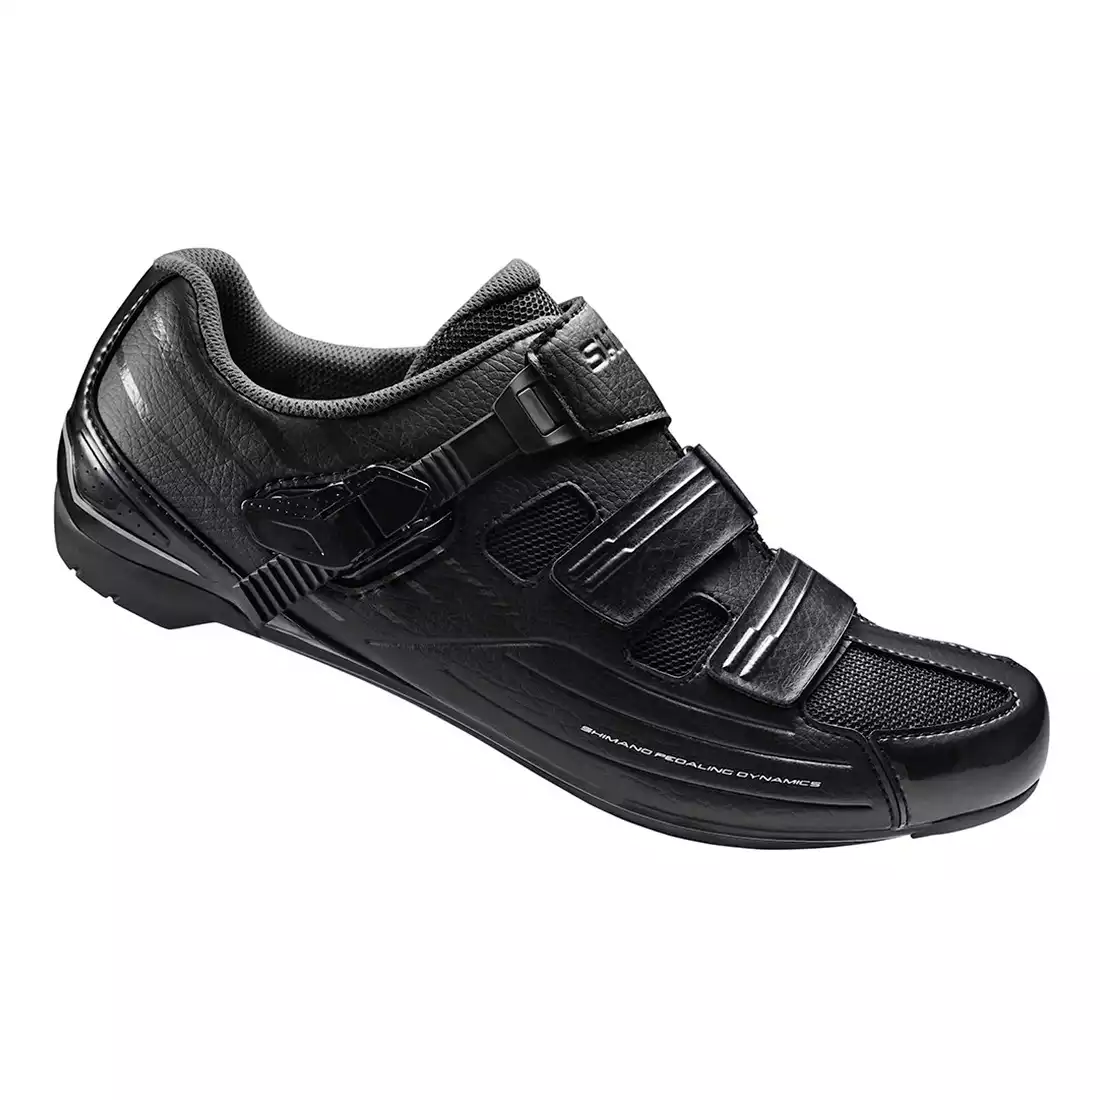 SHIMANO SHRP300SL szosowe buty rowerowe, czarne